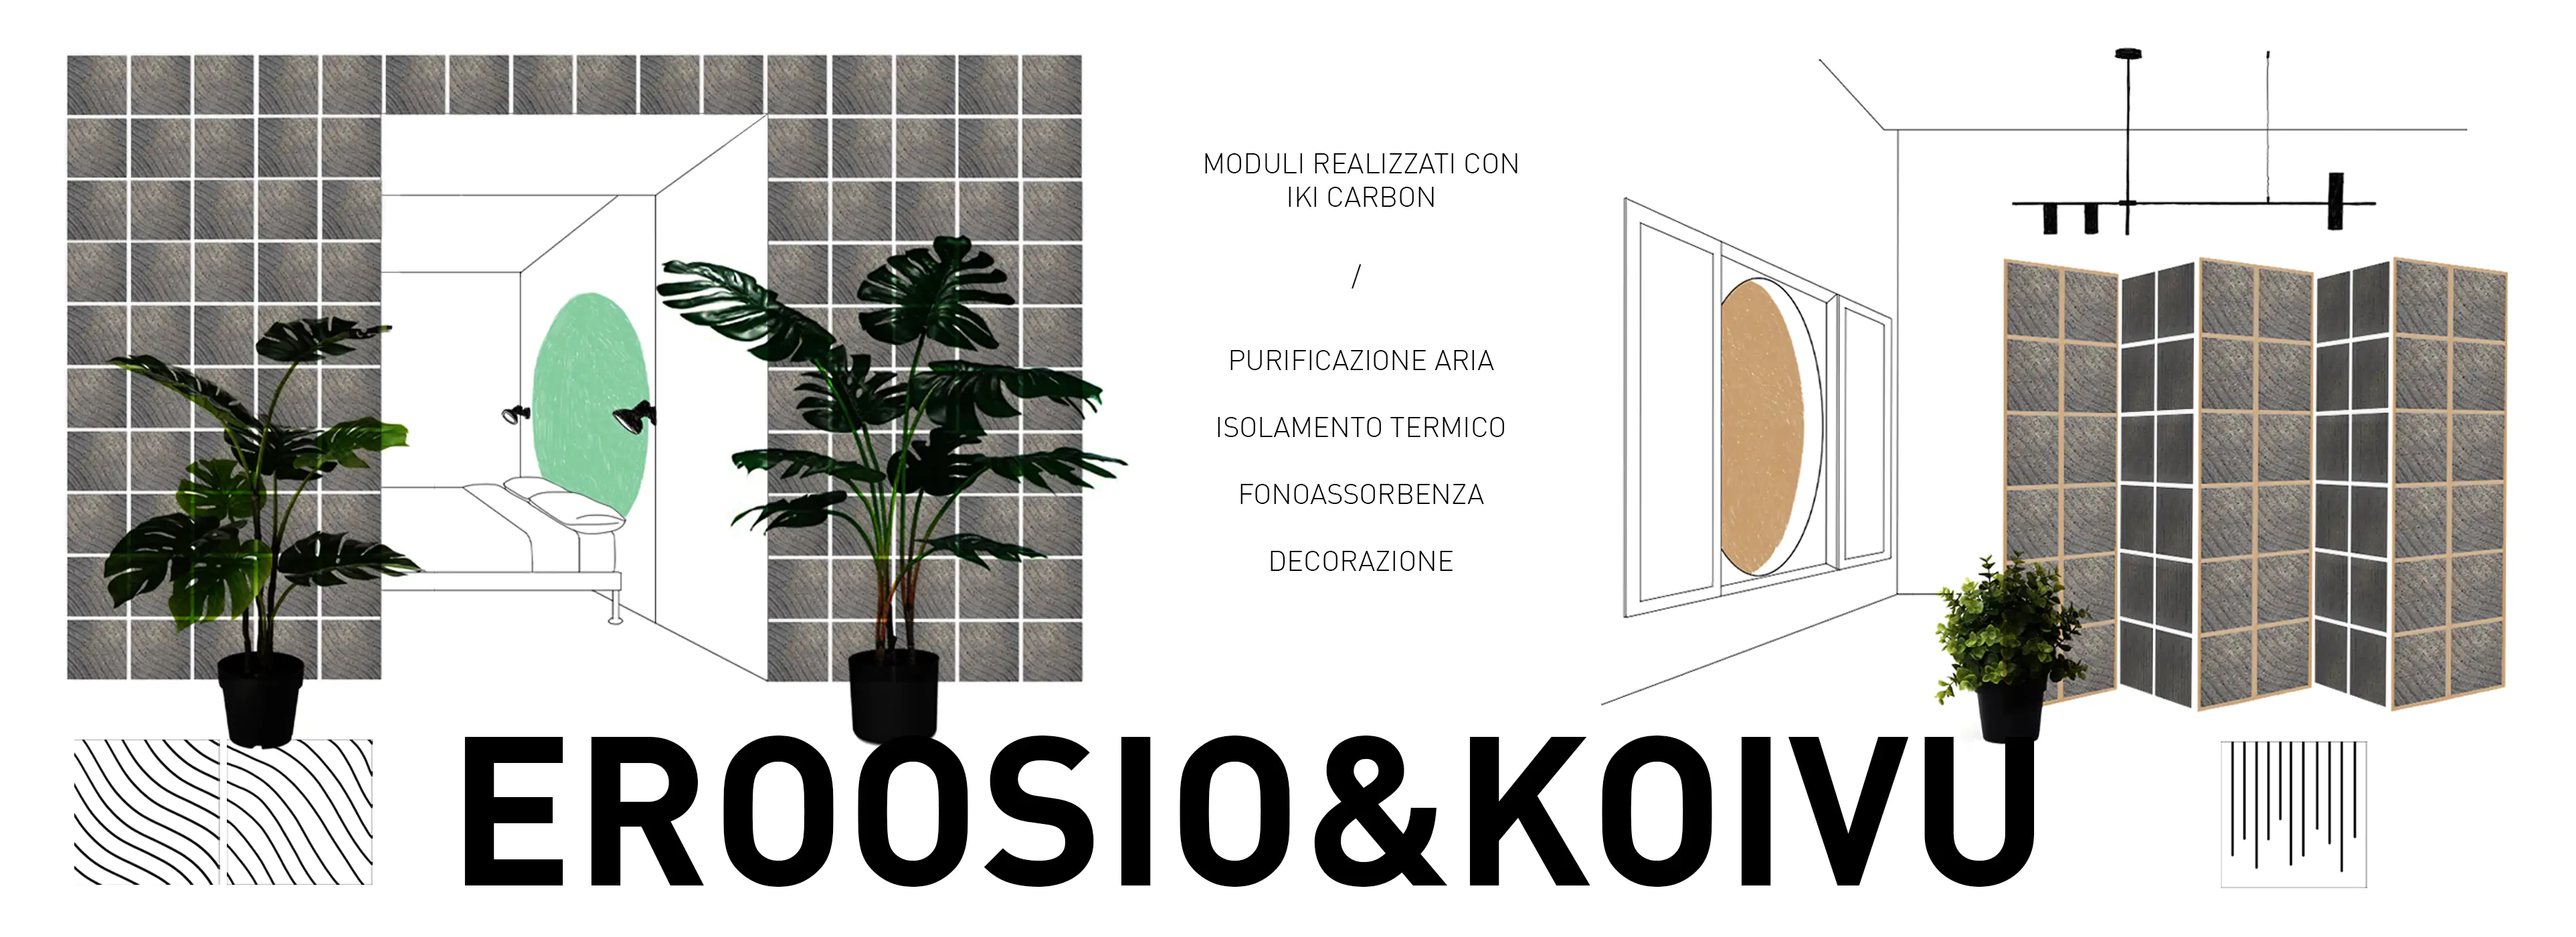 Iki Carbon, il progetto di tesi in Product design di Roberto Dallari